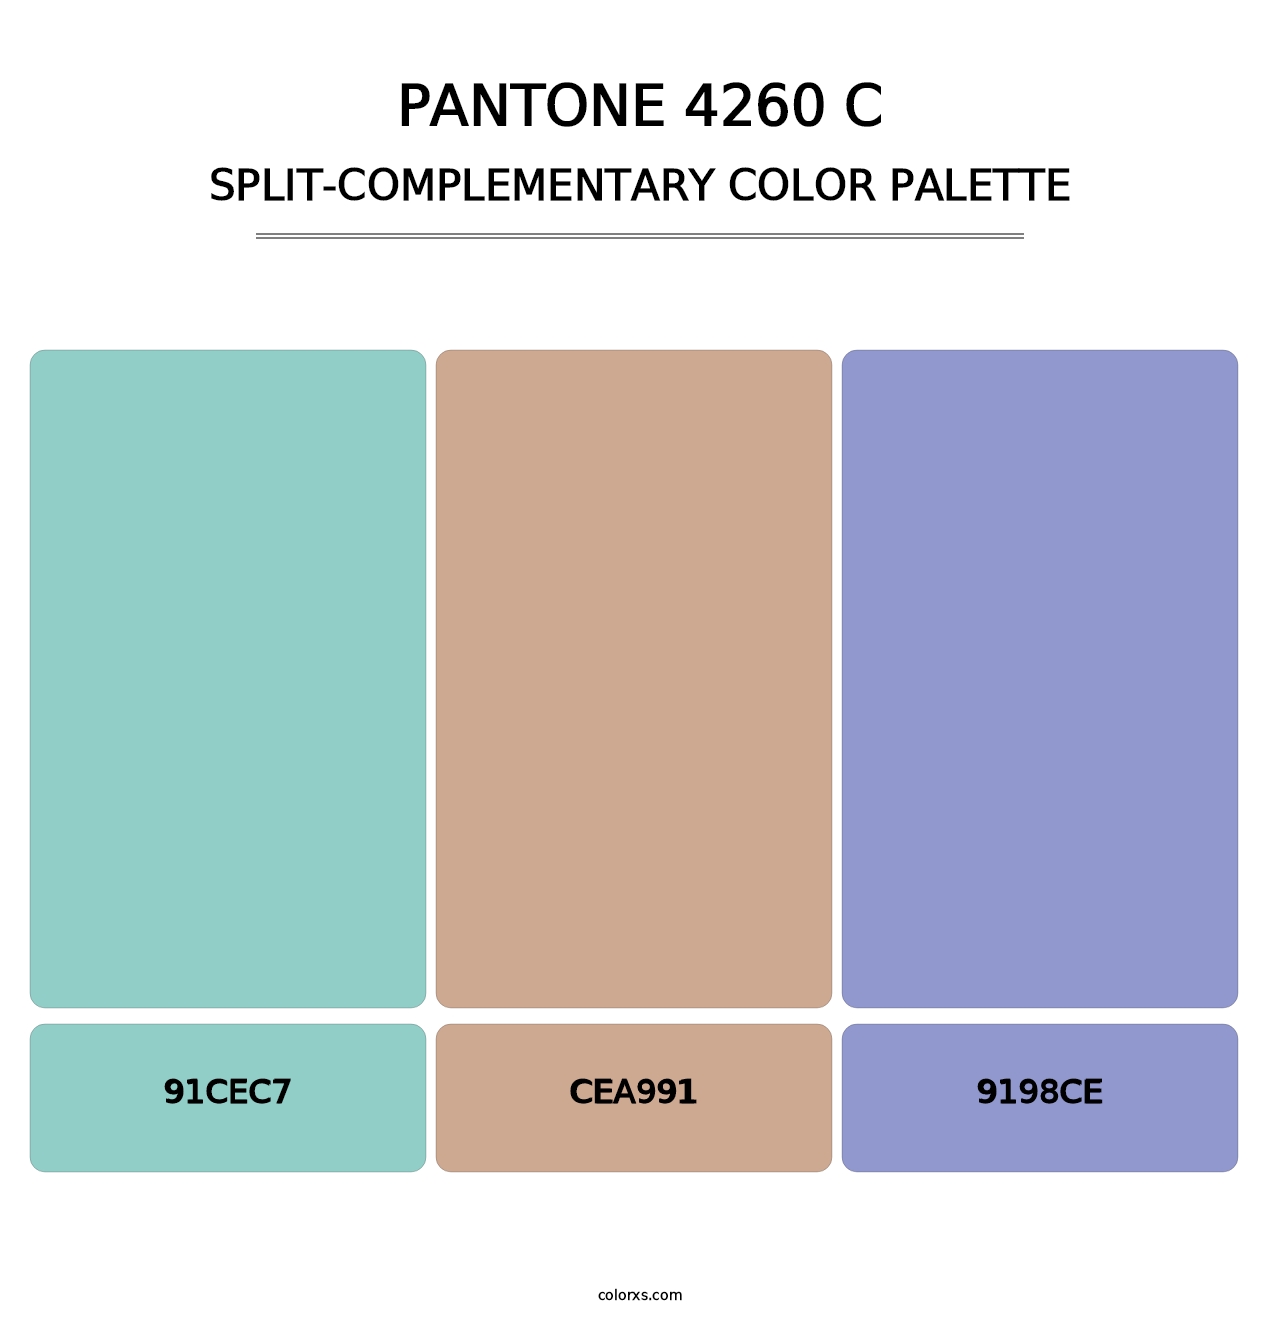 PANTONE 4260 C - Split-Complementary Color Palette